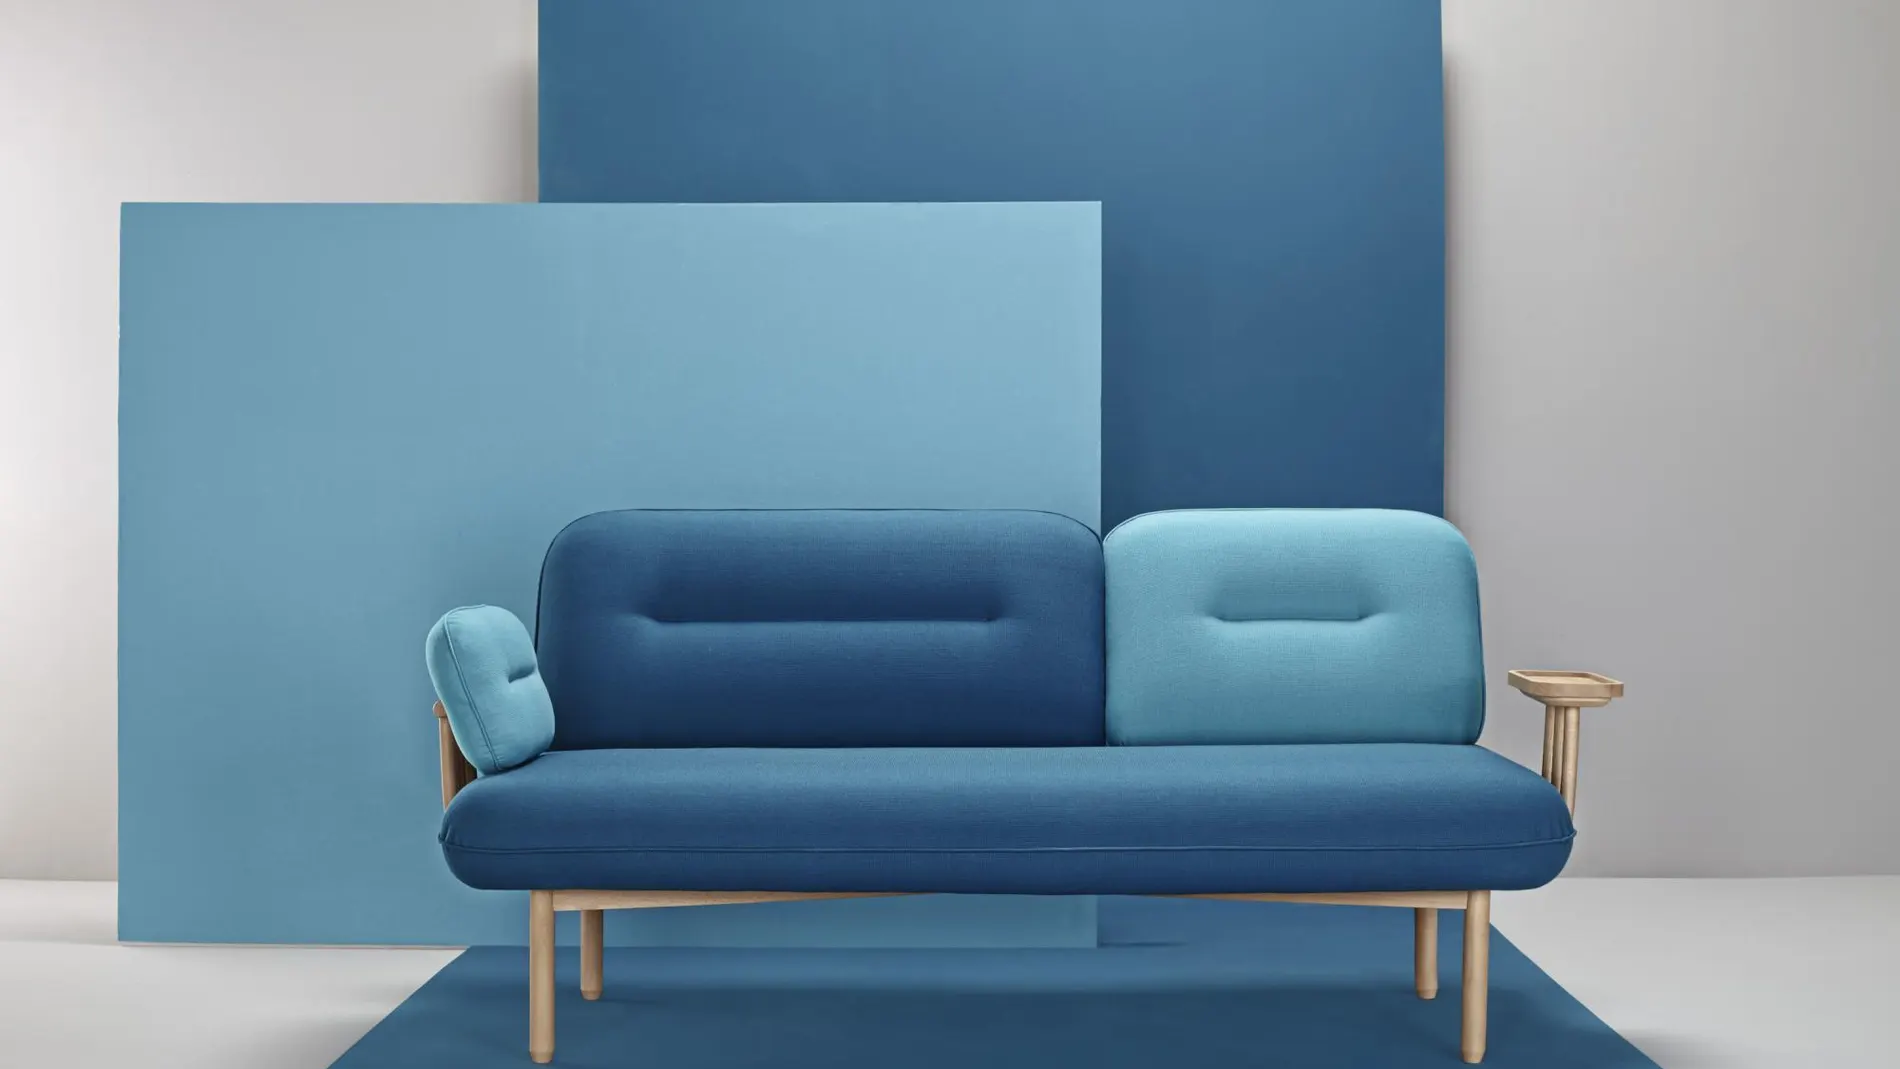 Descubre 3 diseñadores emergentes que idean las sillas y luces de tu casa